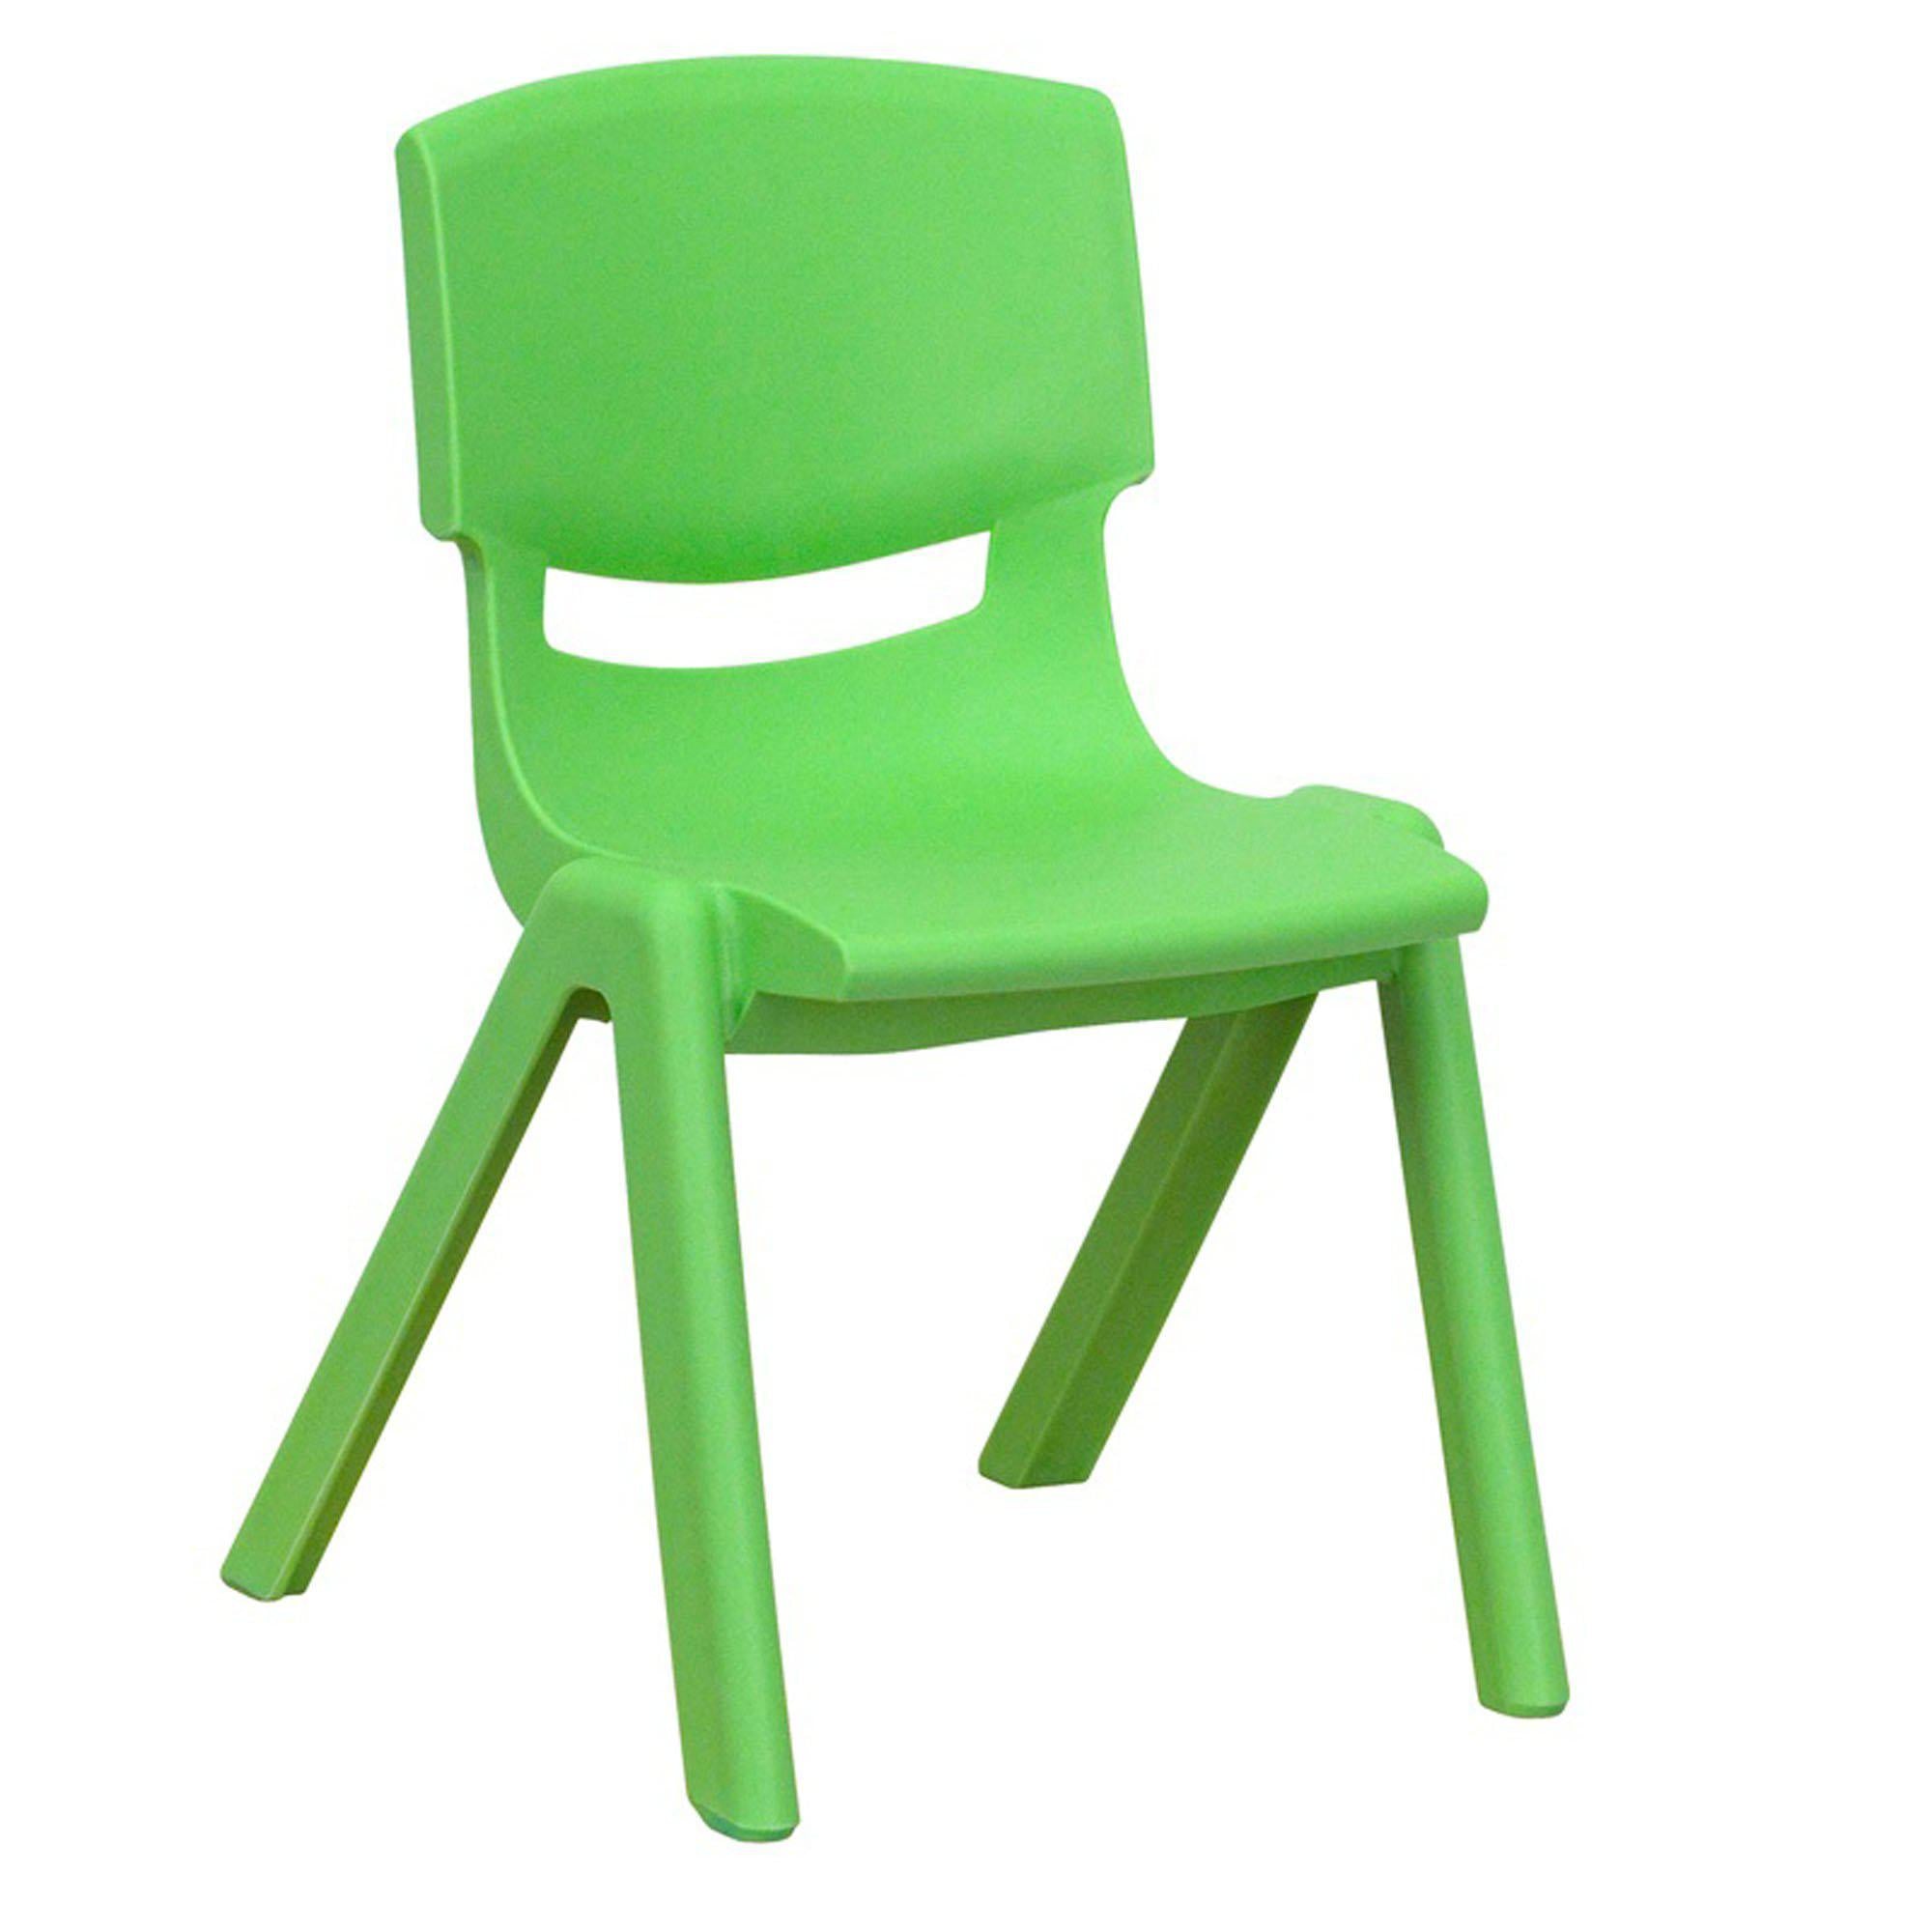 Nextgen Plastic School Stack Chair, 12" Seat Height